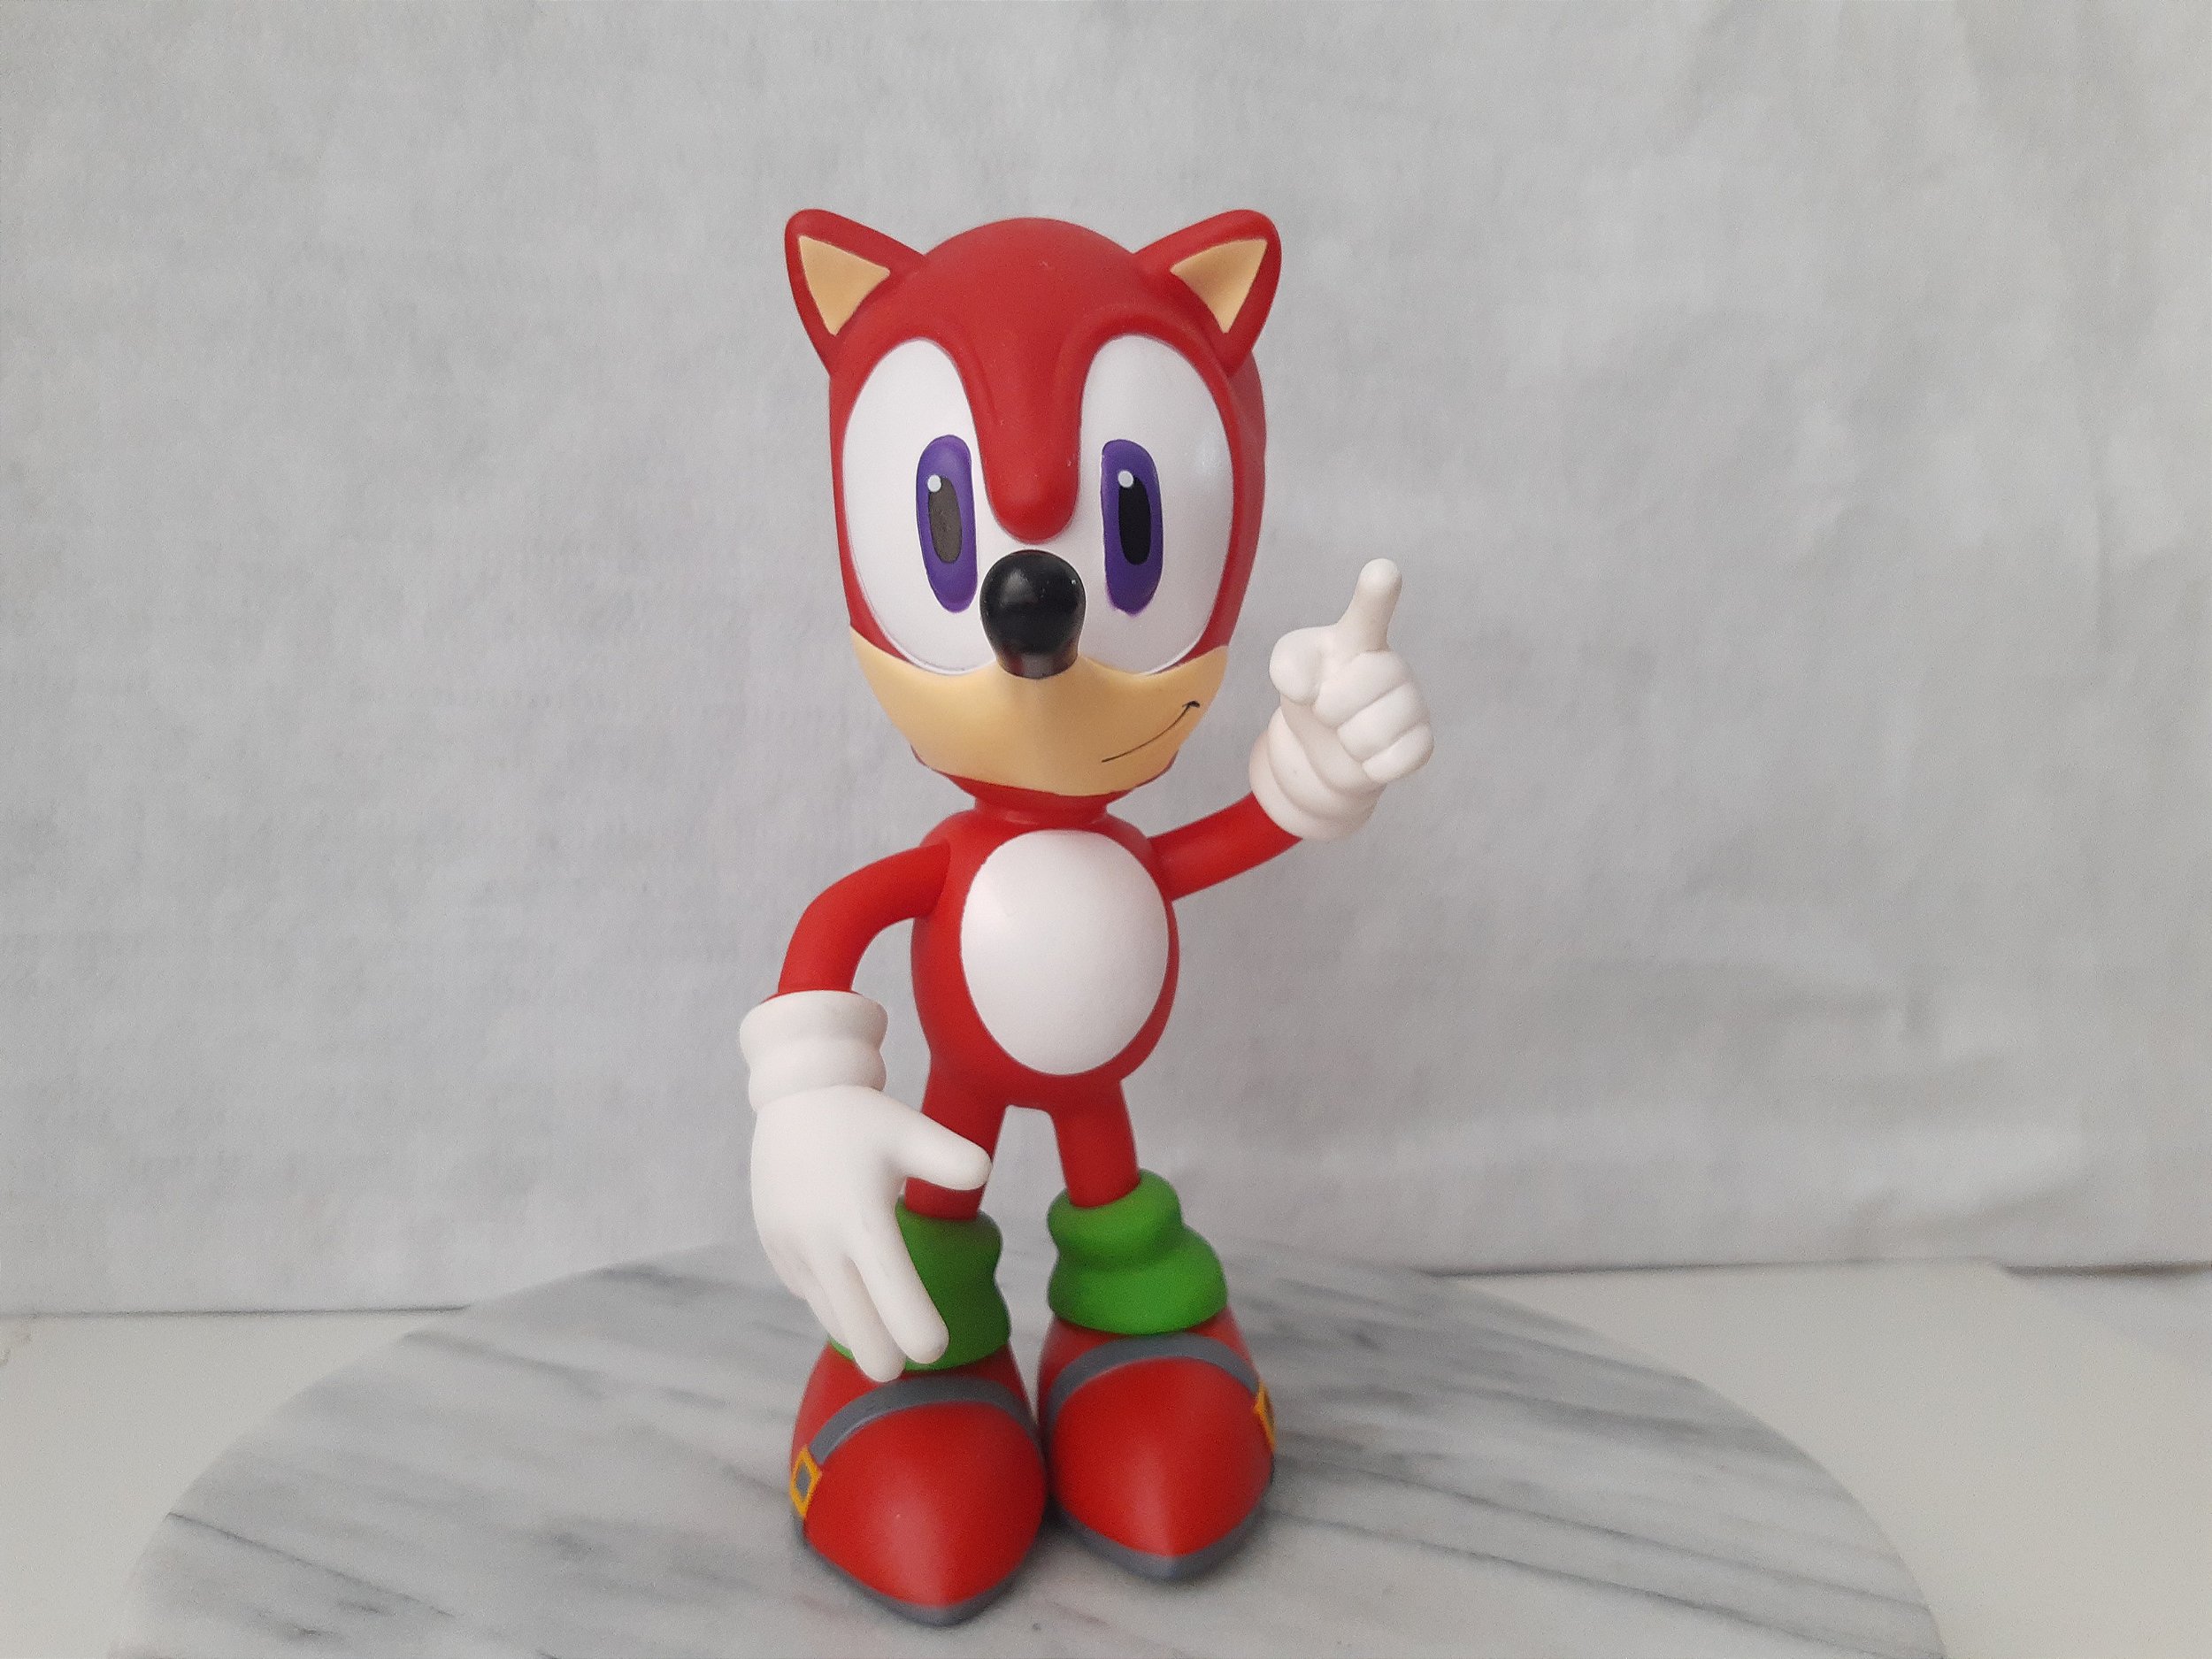 Boneco Sonic vermelho no articulado, original Sega, de 25 cm usado - Taffy  Shop - Brechó de brinquedos